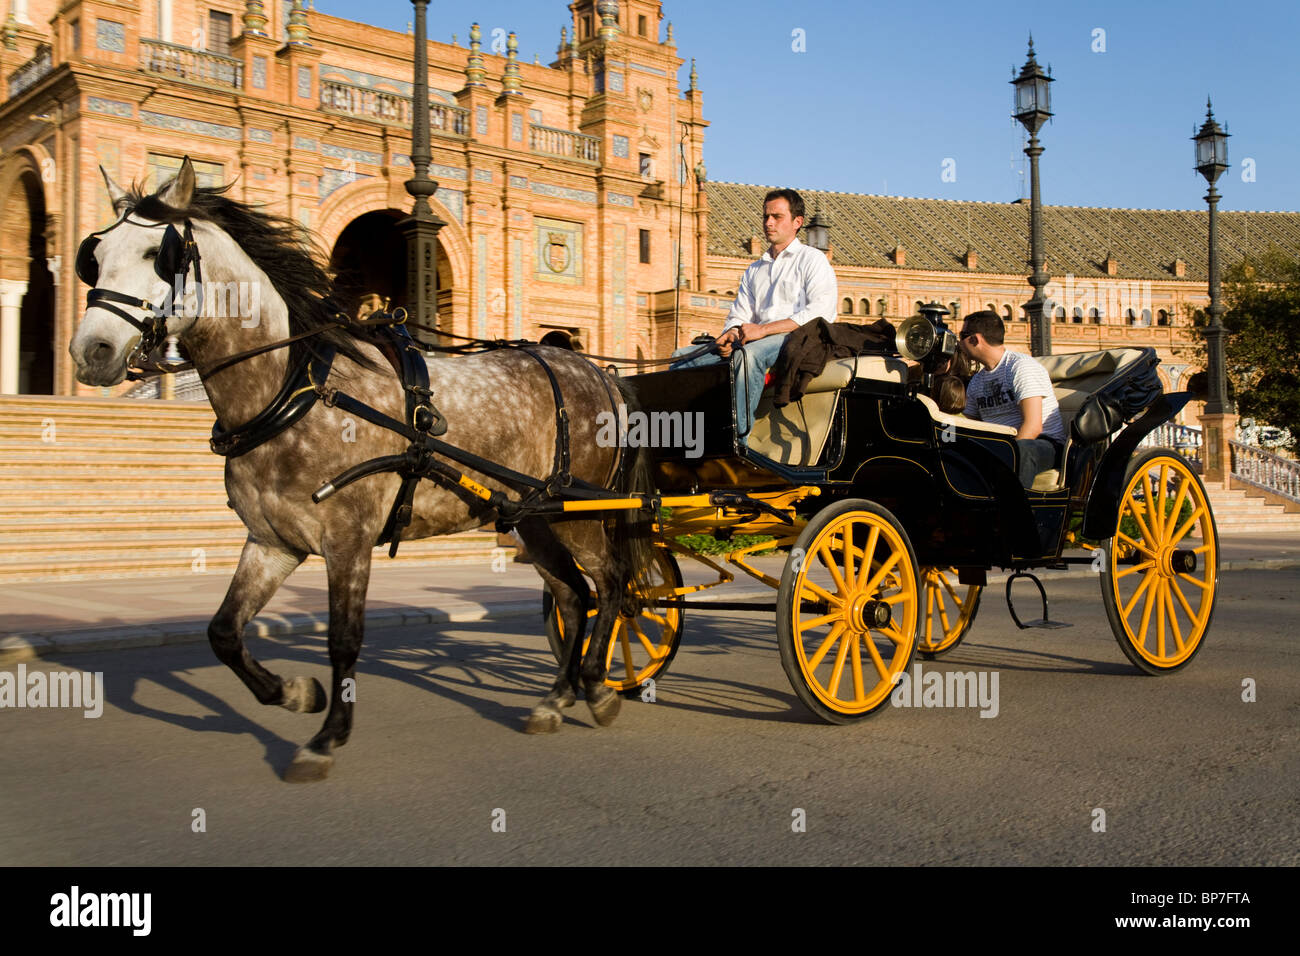 Traber ziehen Schlitten und Touristen um die Vorderseite des Sevilla ist der Plaza de España de Sevilla. Sevilla, Spanien. Stockfoto